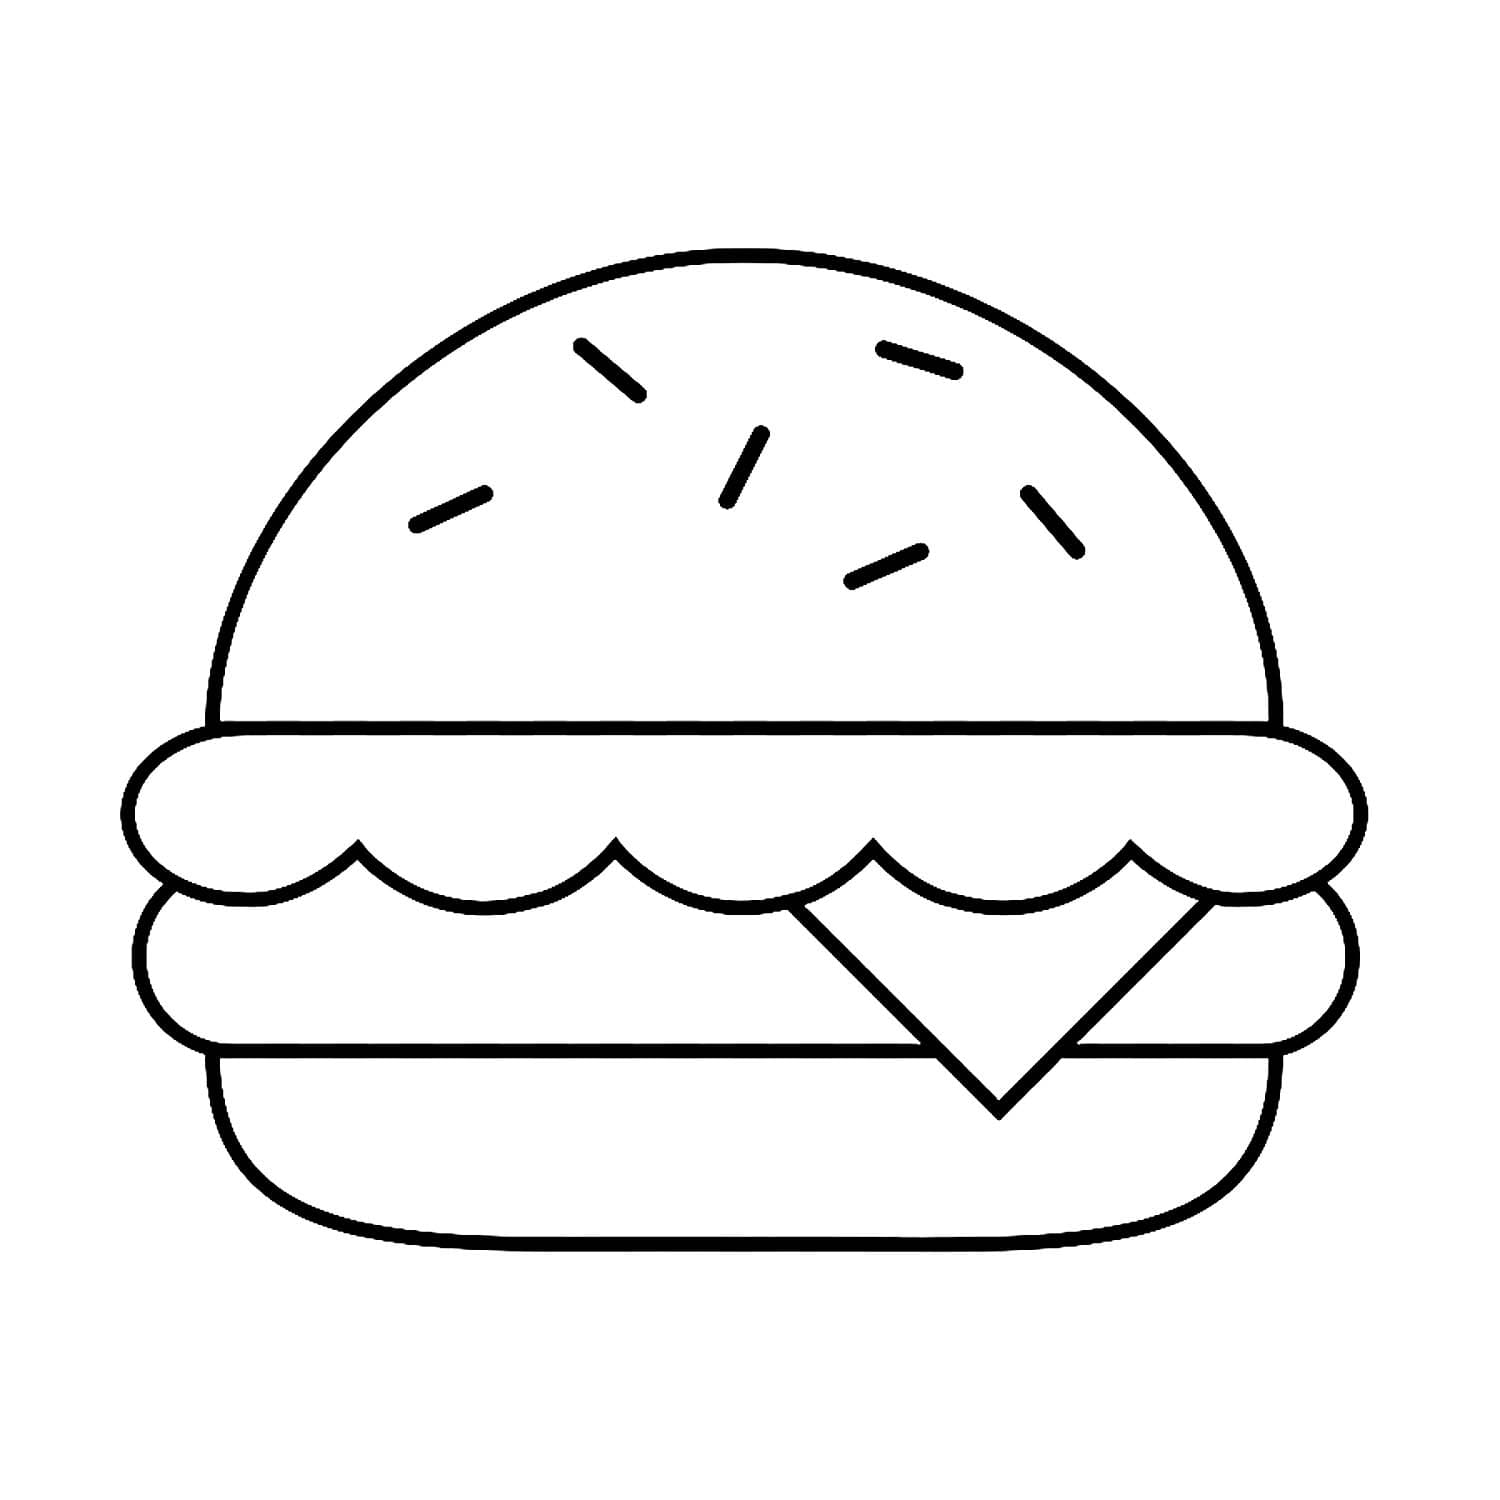 Hamburger 45  coloring page to print and coloring